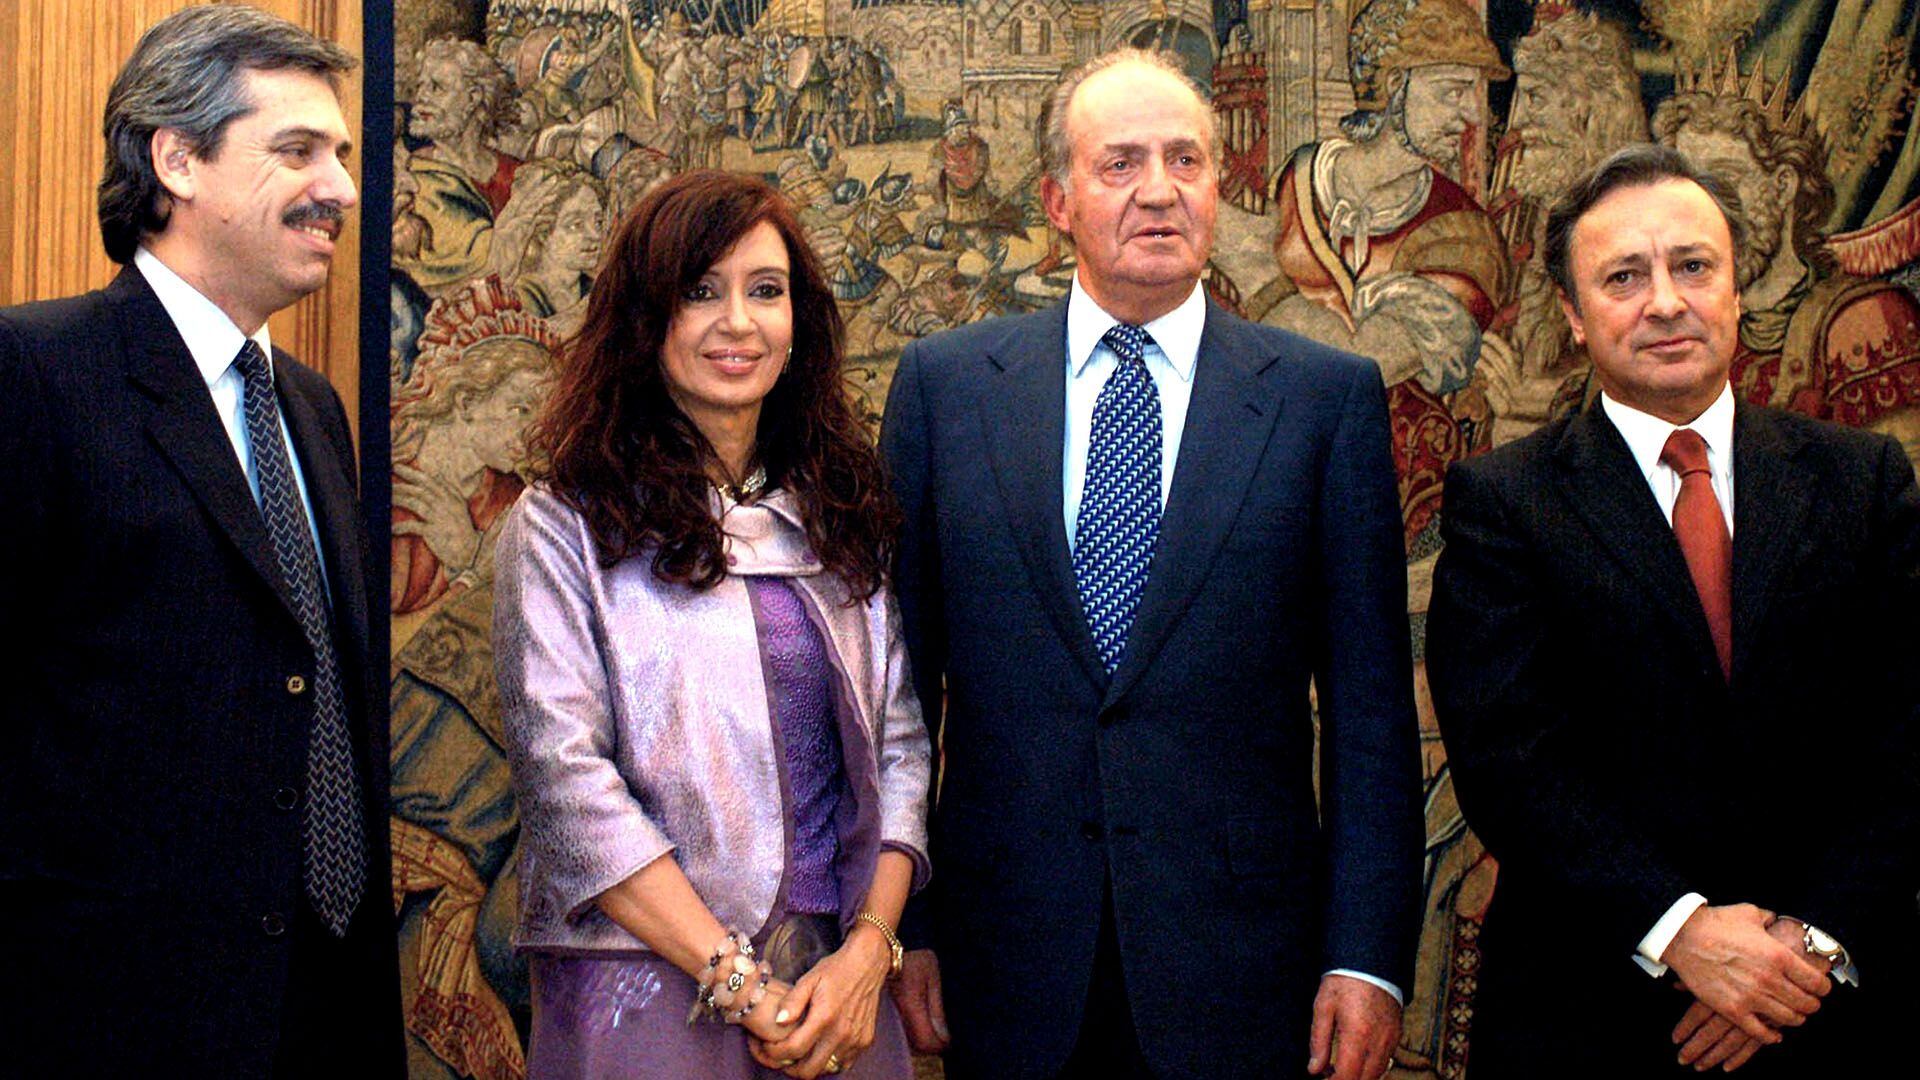  El 12 de diciembre viajó a Madrid con la senadora y primera dama Cristina Kirchner para reunirse con el rey Juan Carlos y el ex presidente del gobierno español, José Luis Rodríguez Zapatero. Aquí, también el embajador Carlos Bettini. 